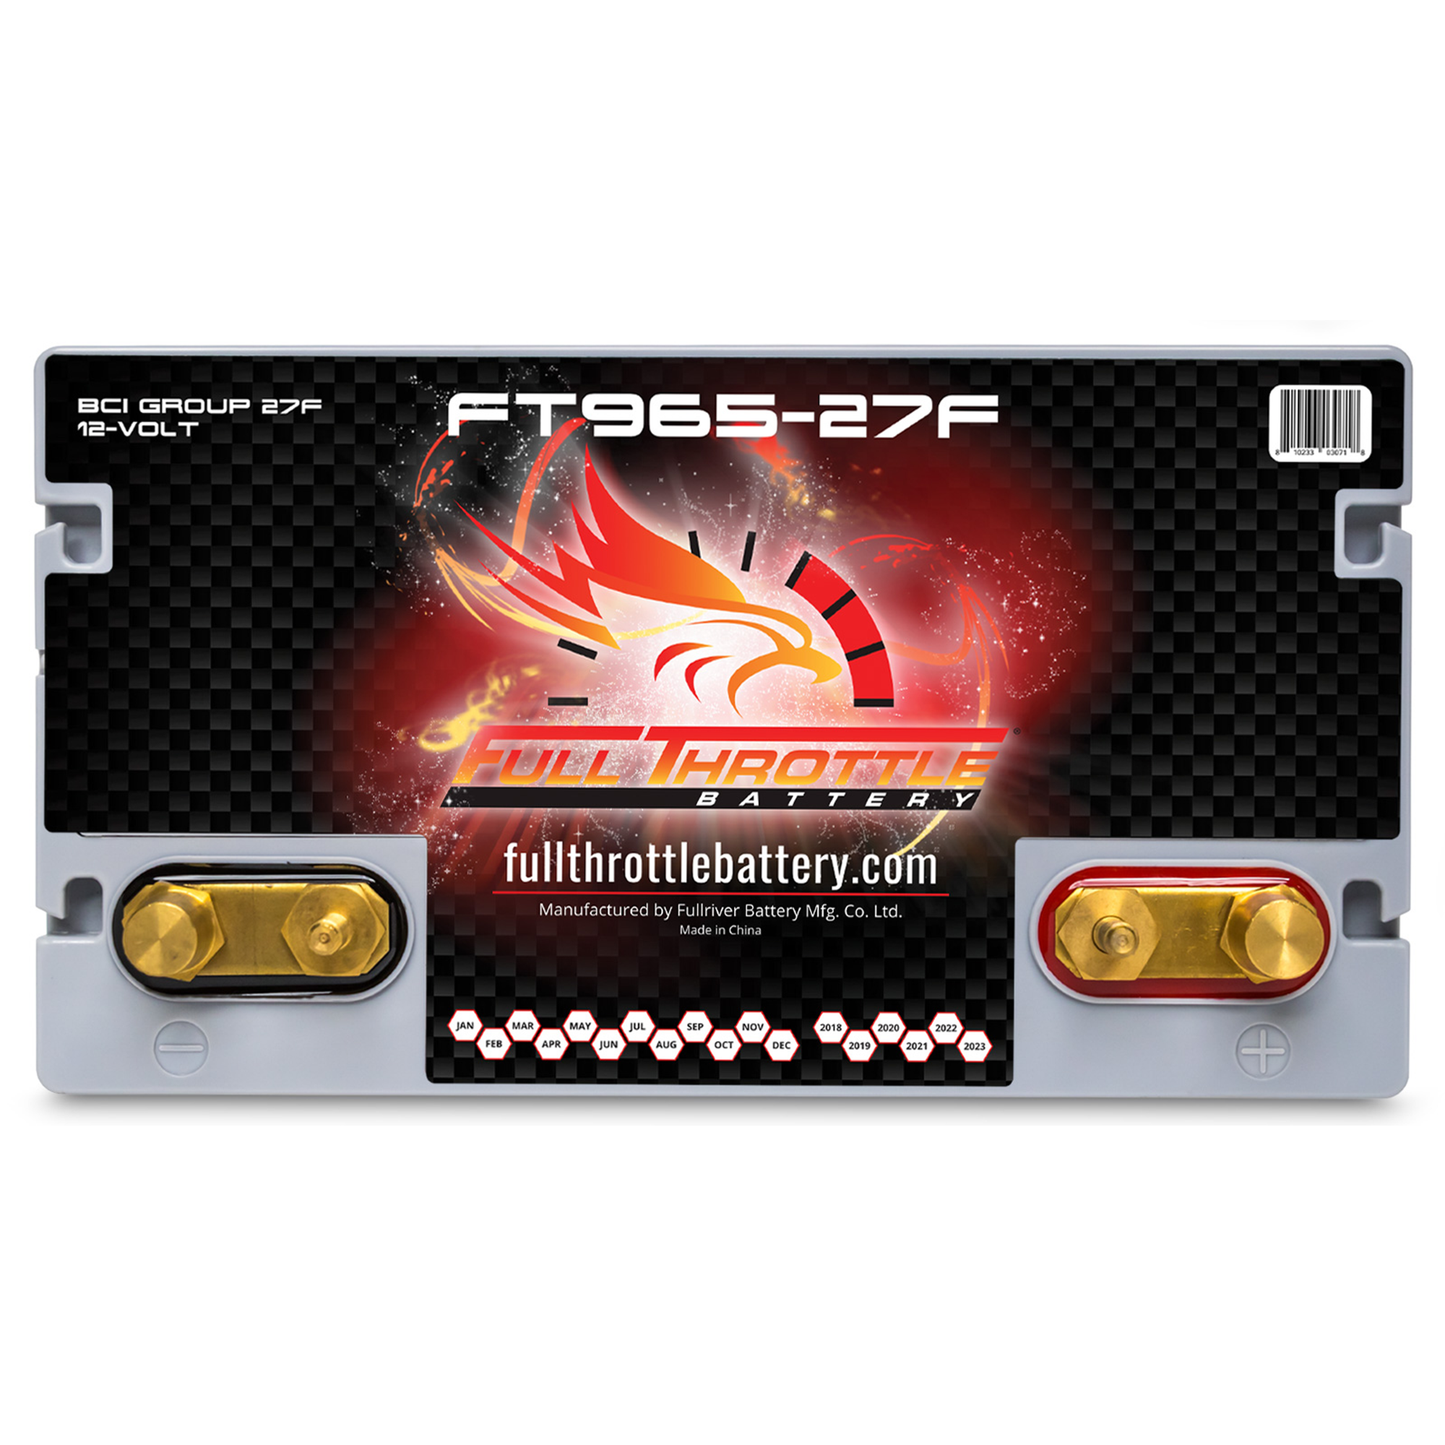 Full Throttle TPPL Battery FT965-27